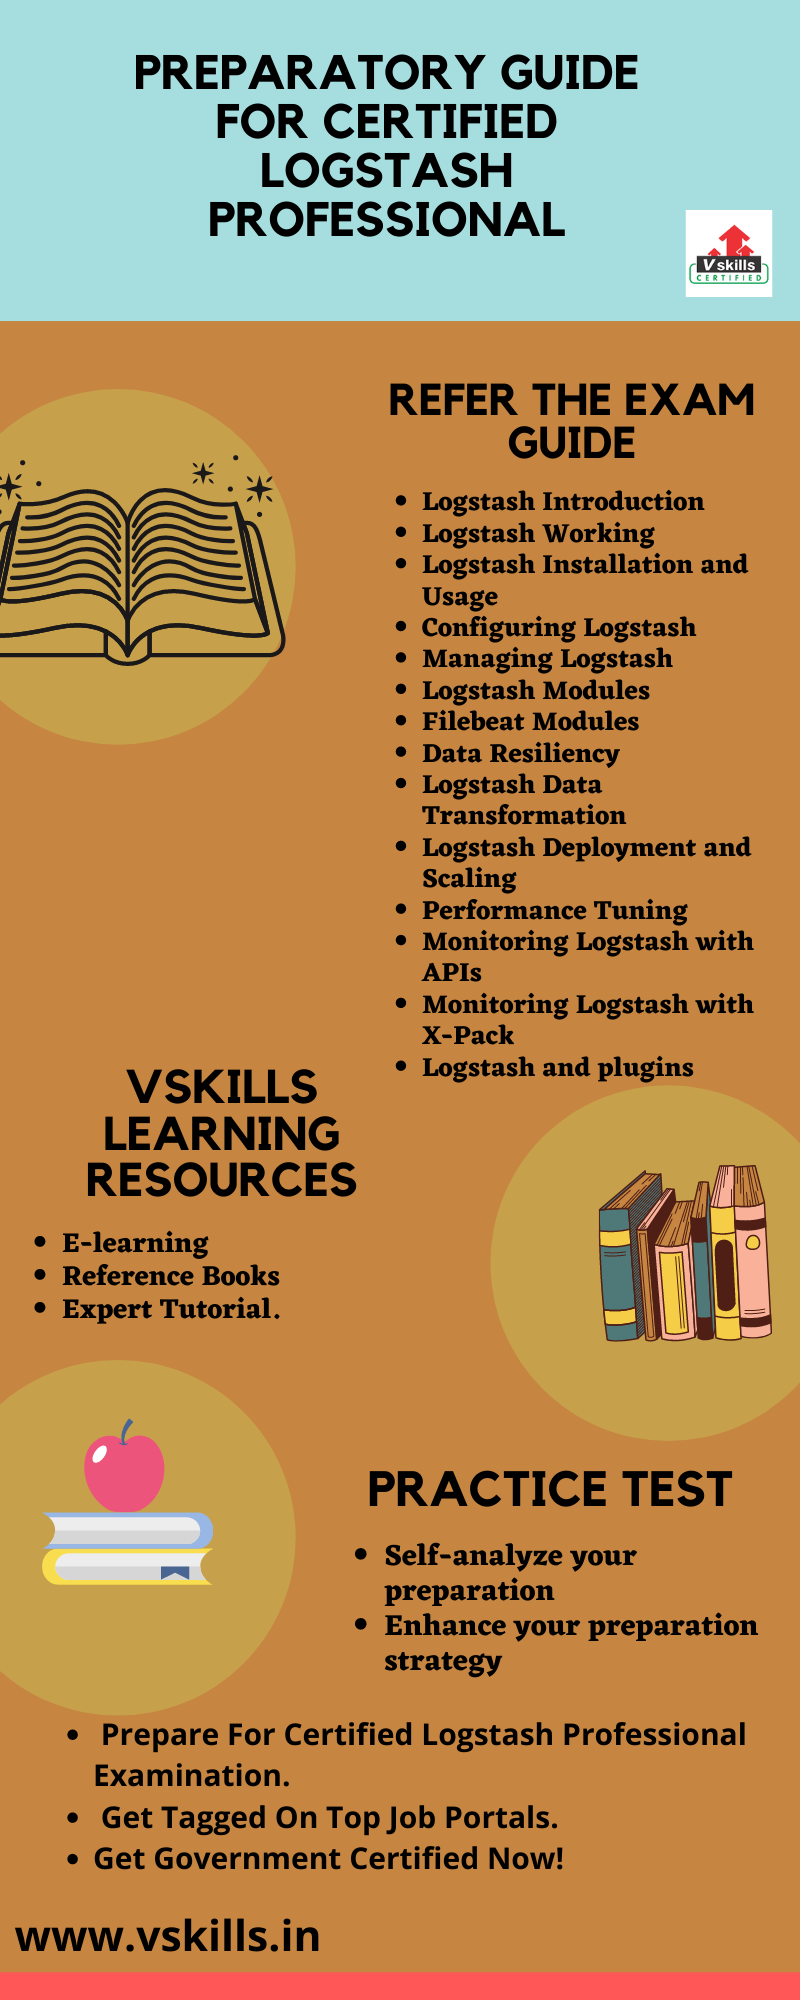 Preparation Guide for Vskills Certified Logstash Professional